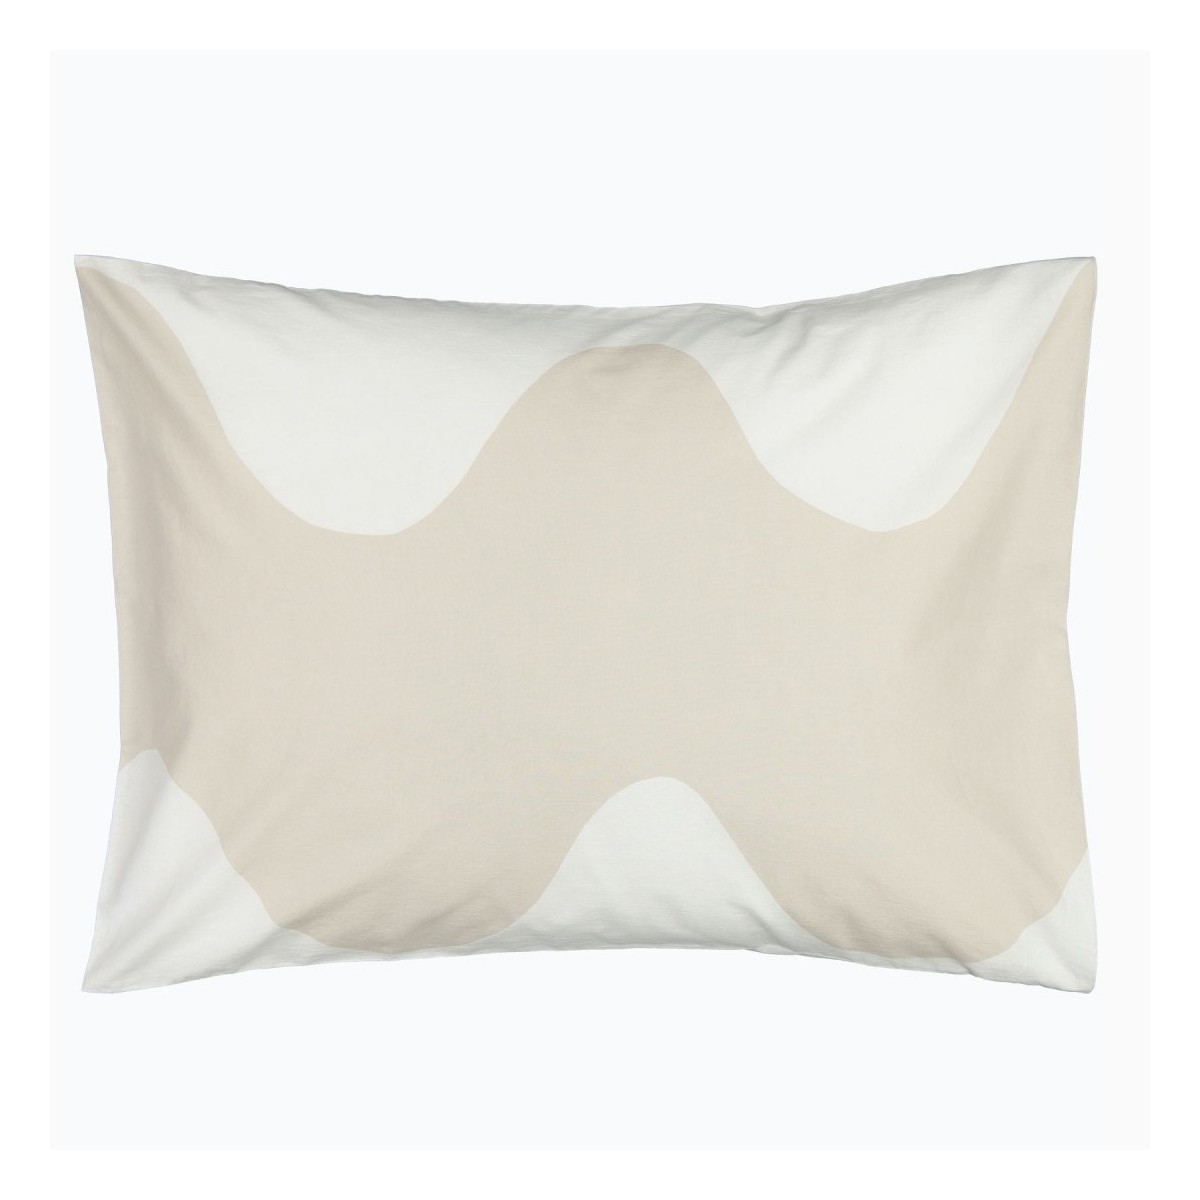 50x70/75cm - Lokki - 183 - Marimekko pillow case